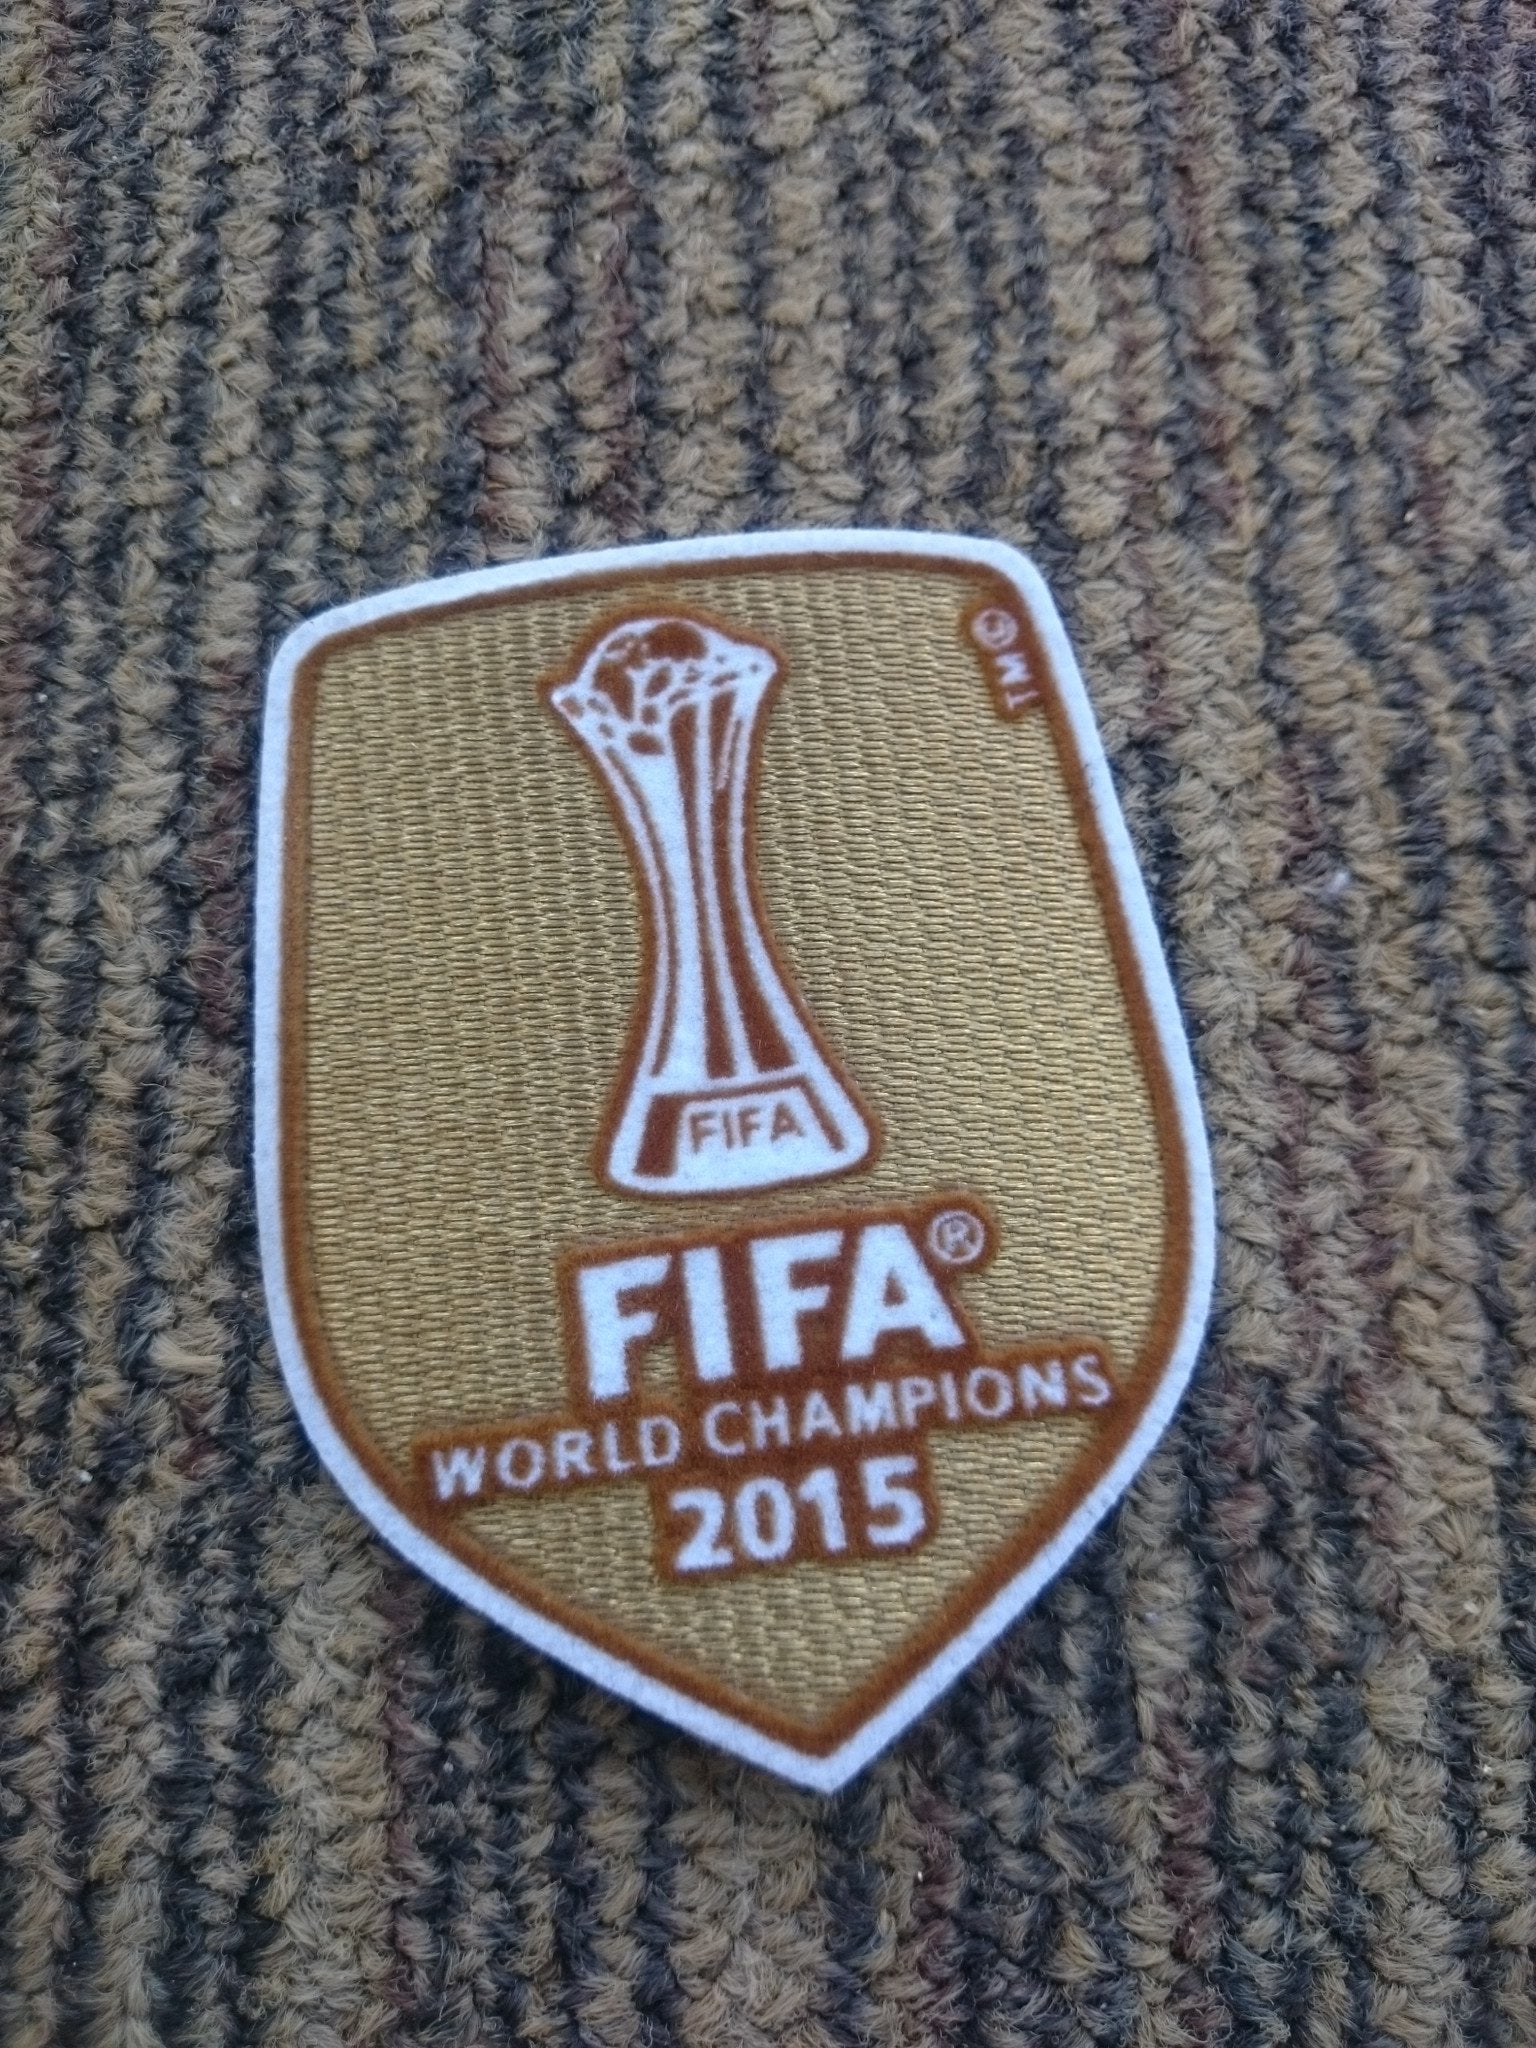 Fifa World Champions 2015 Patch - ClassicFootballJersey